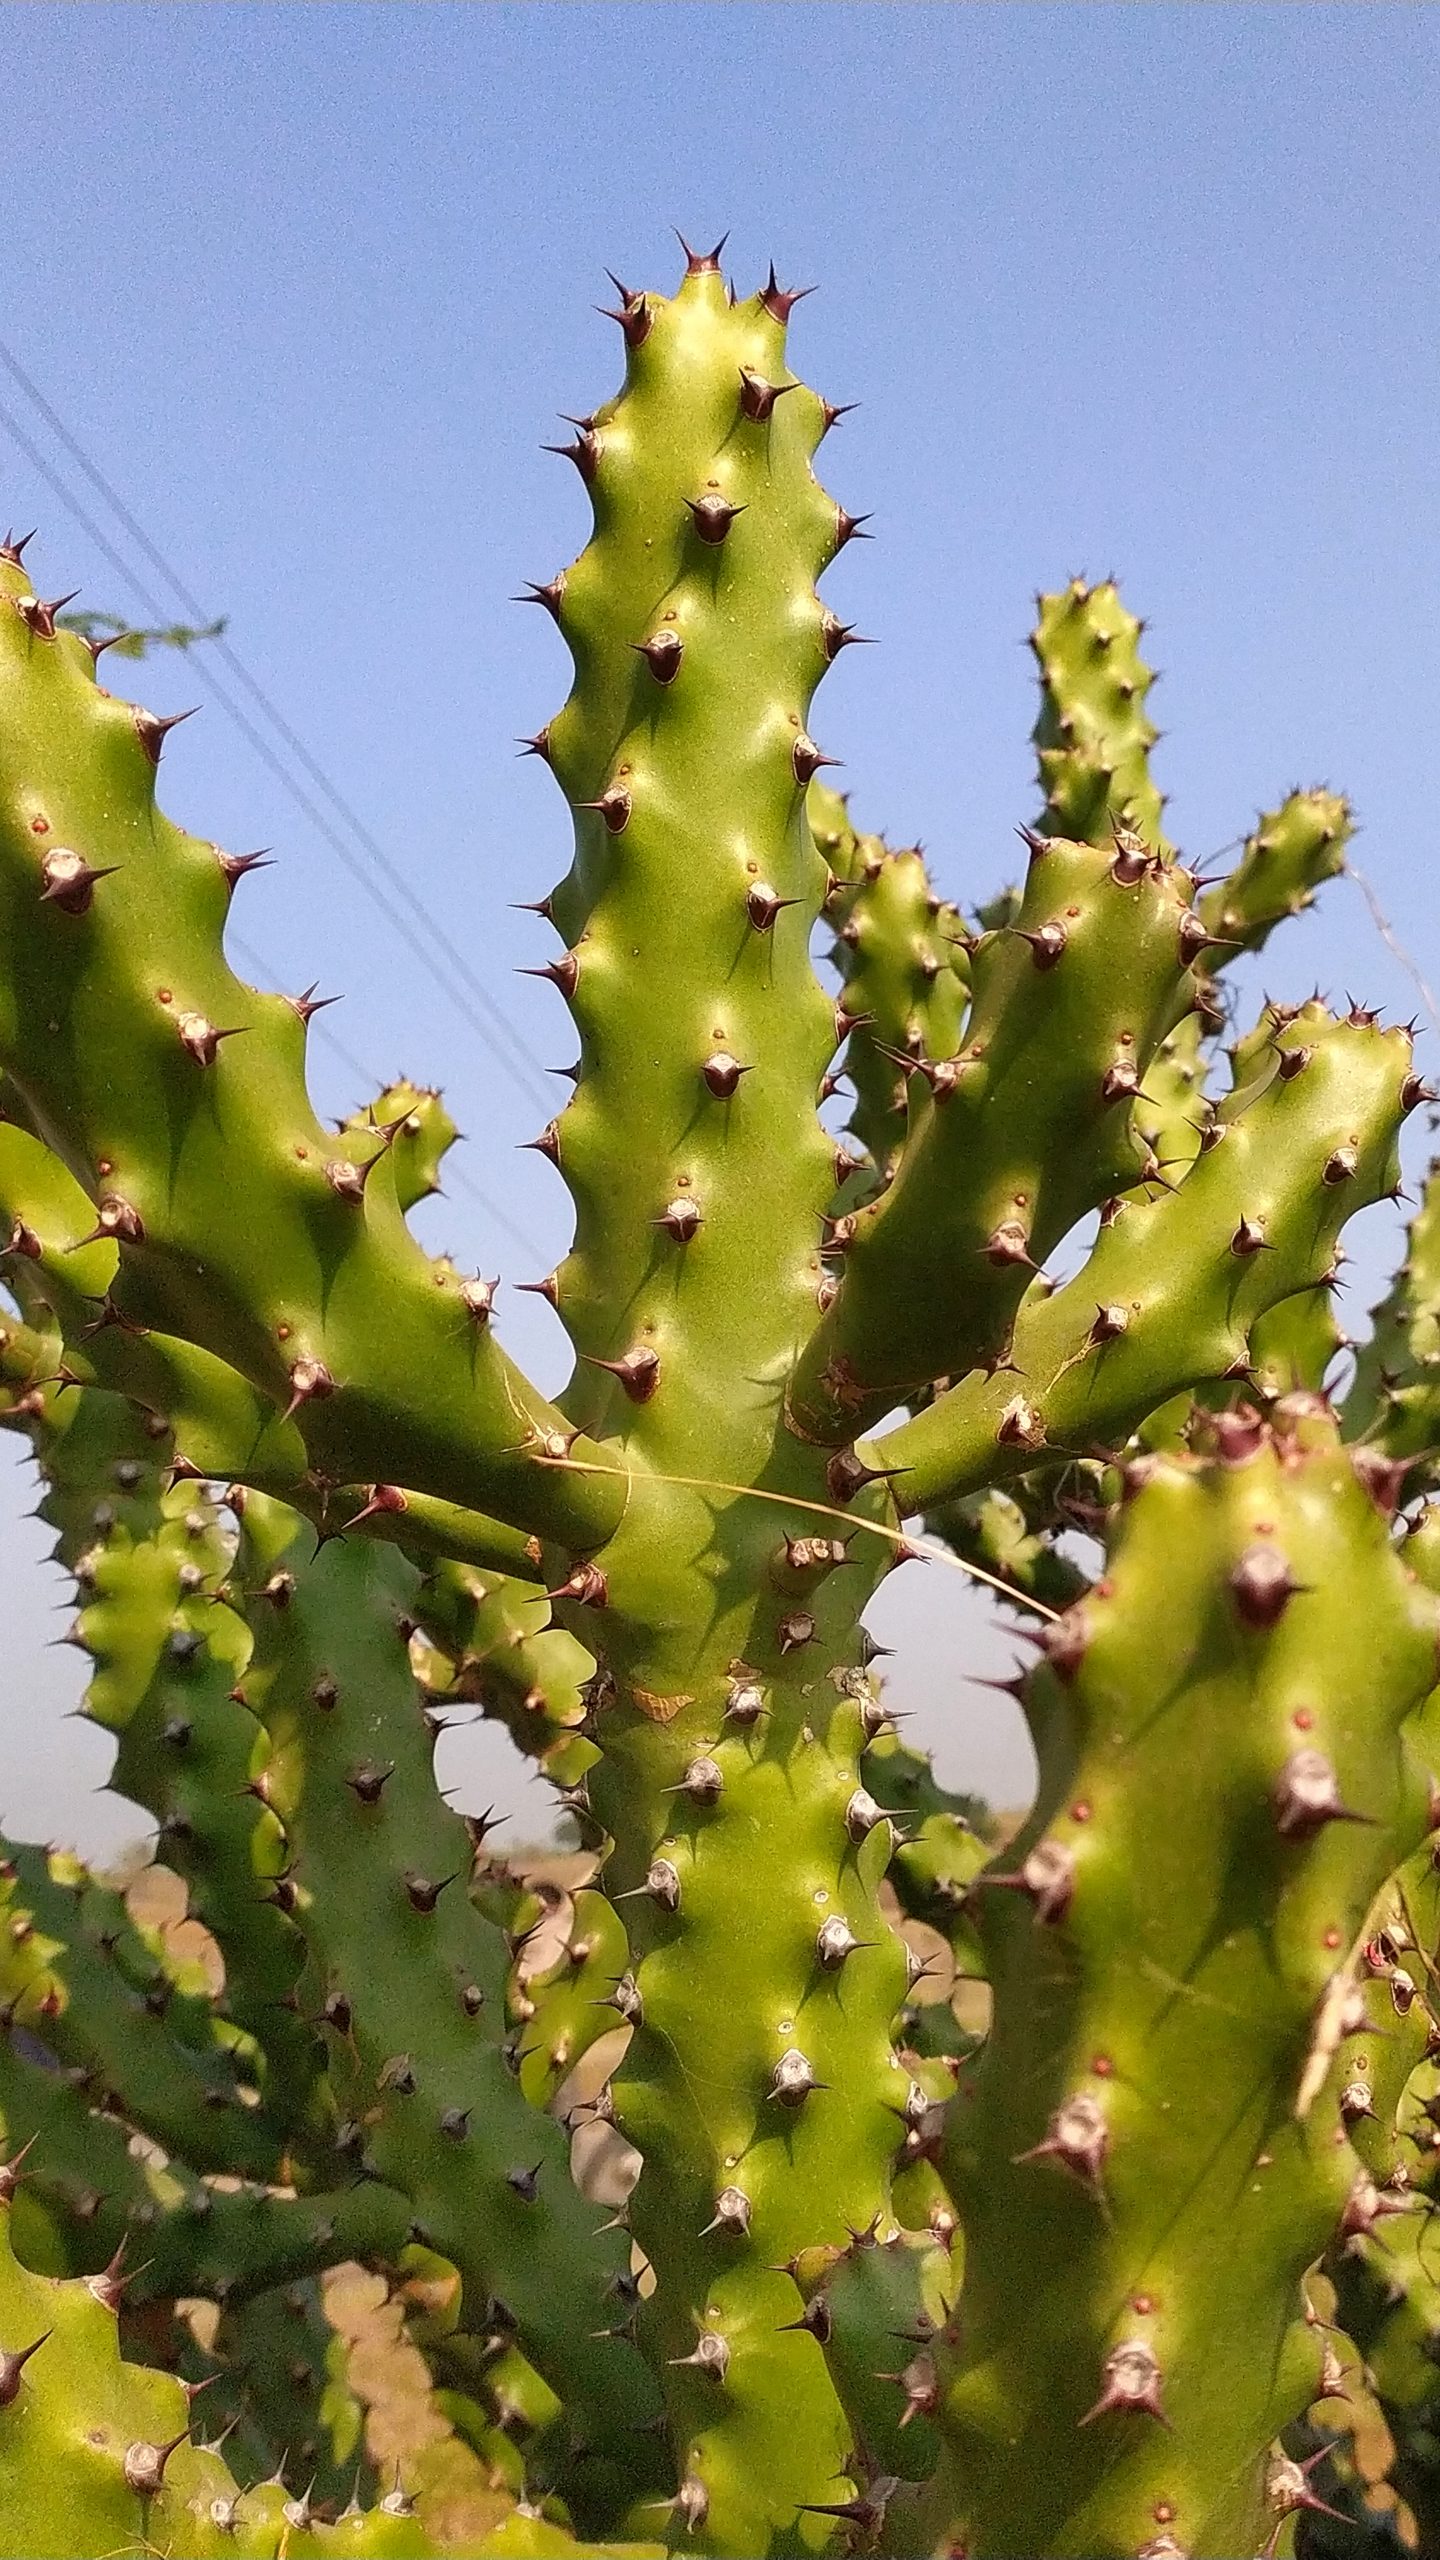 Cactus plant